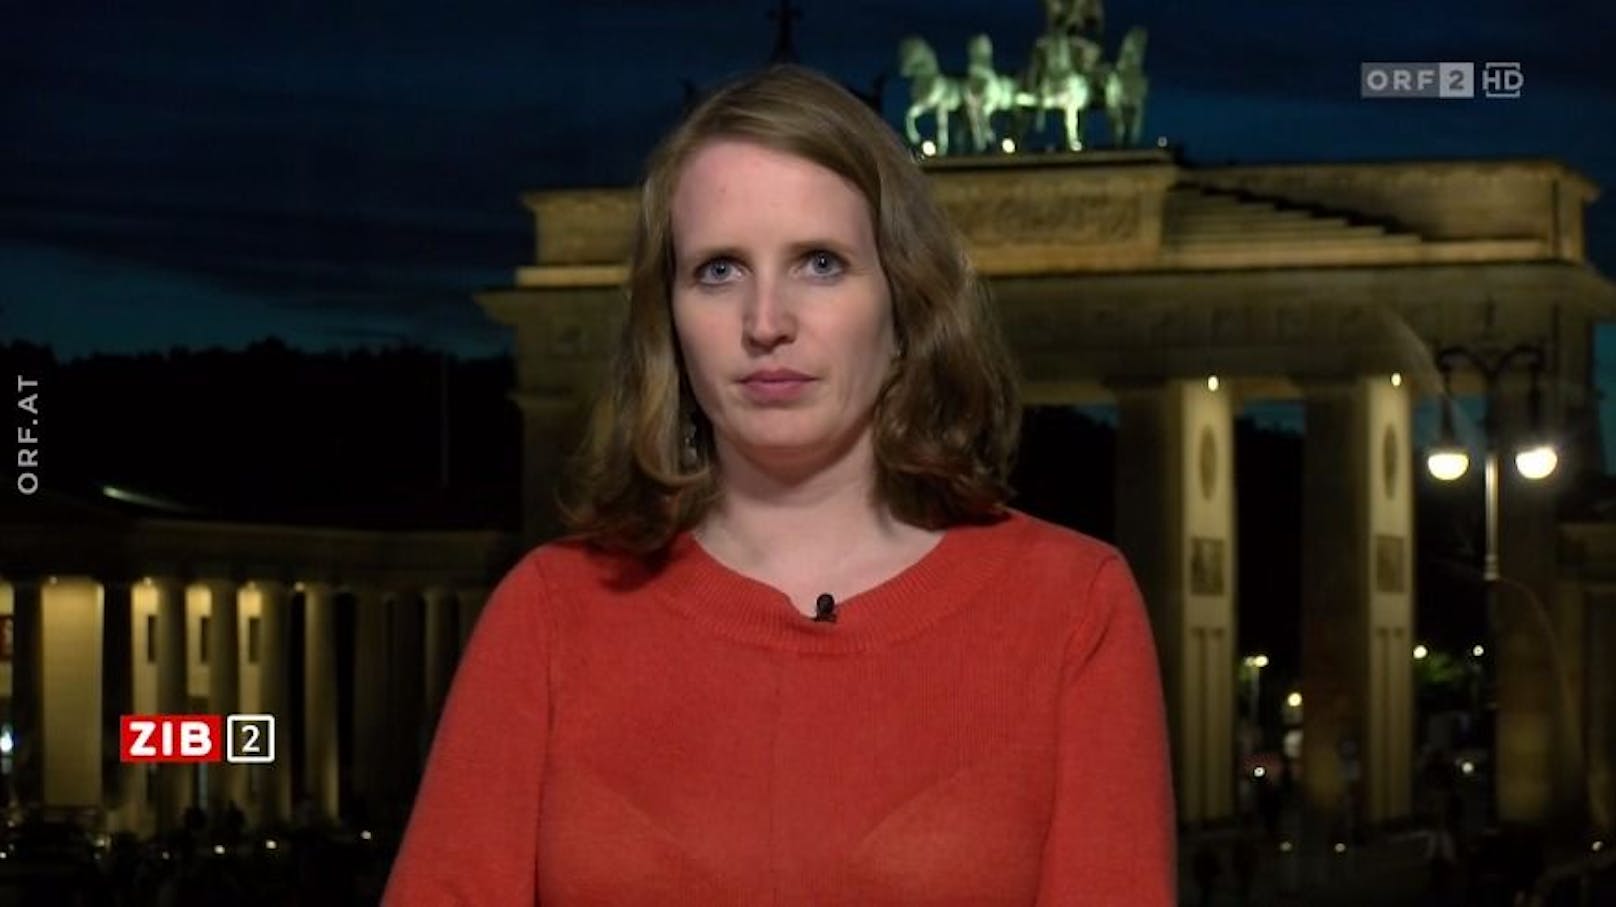 Innenpolitikjournalistin Ann Katrin Müller am späten Dienstagabend in der ORF-"ZIB2".